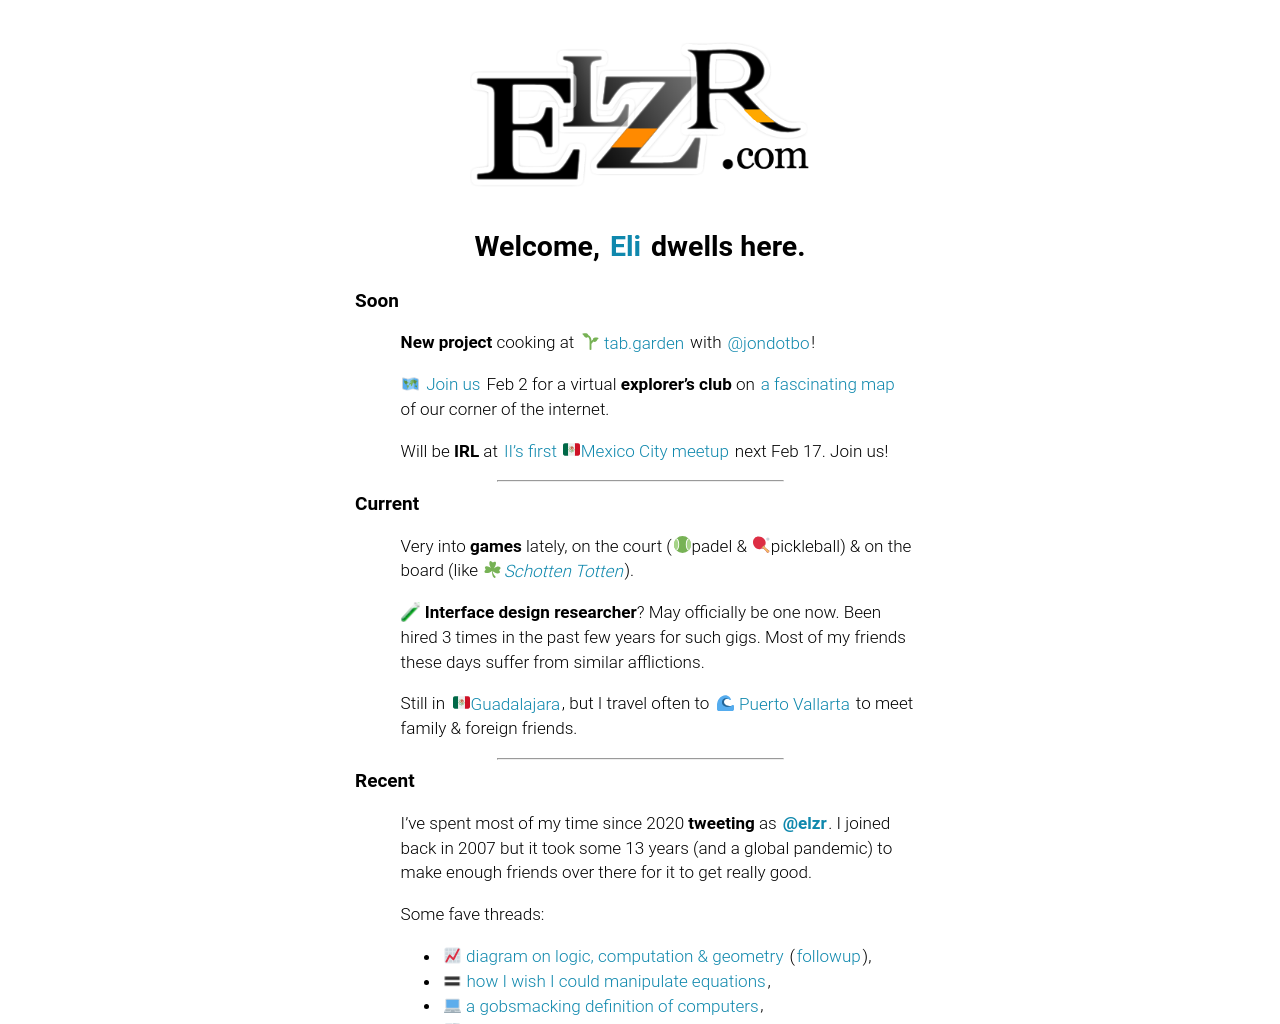 elzr.com